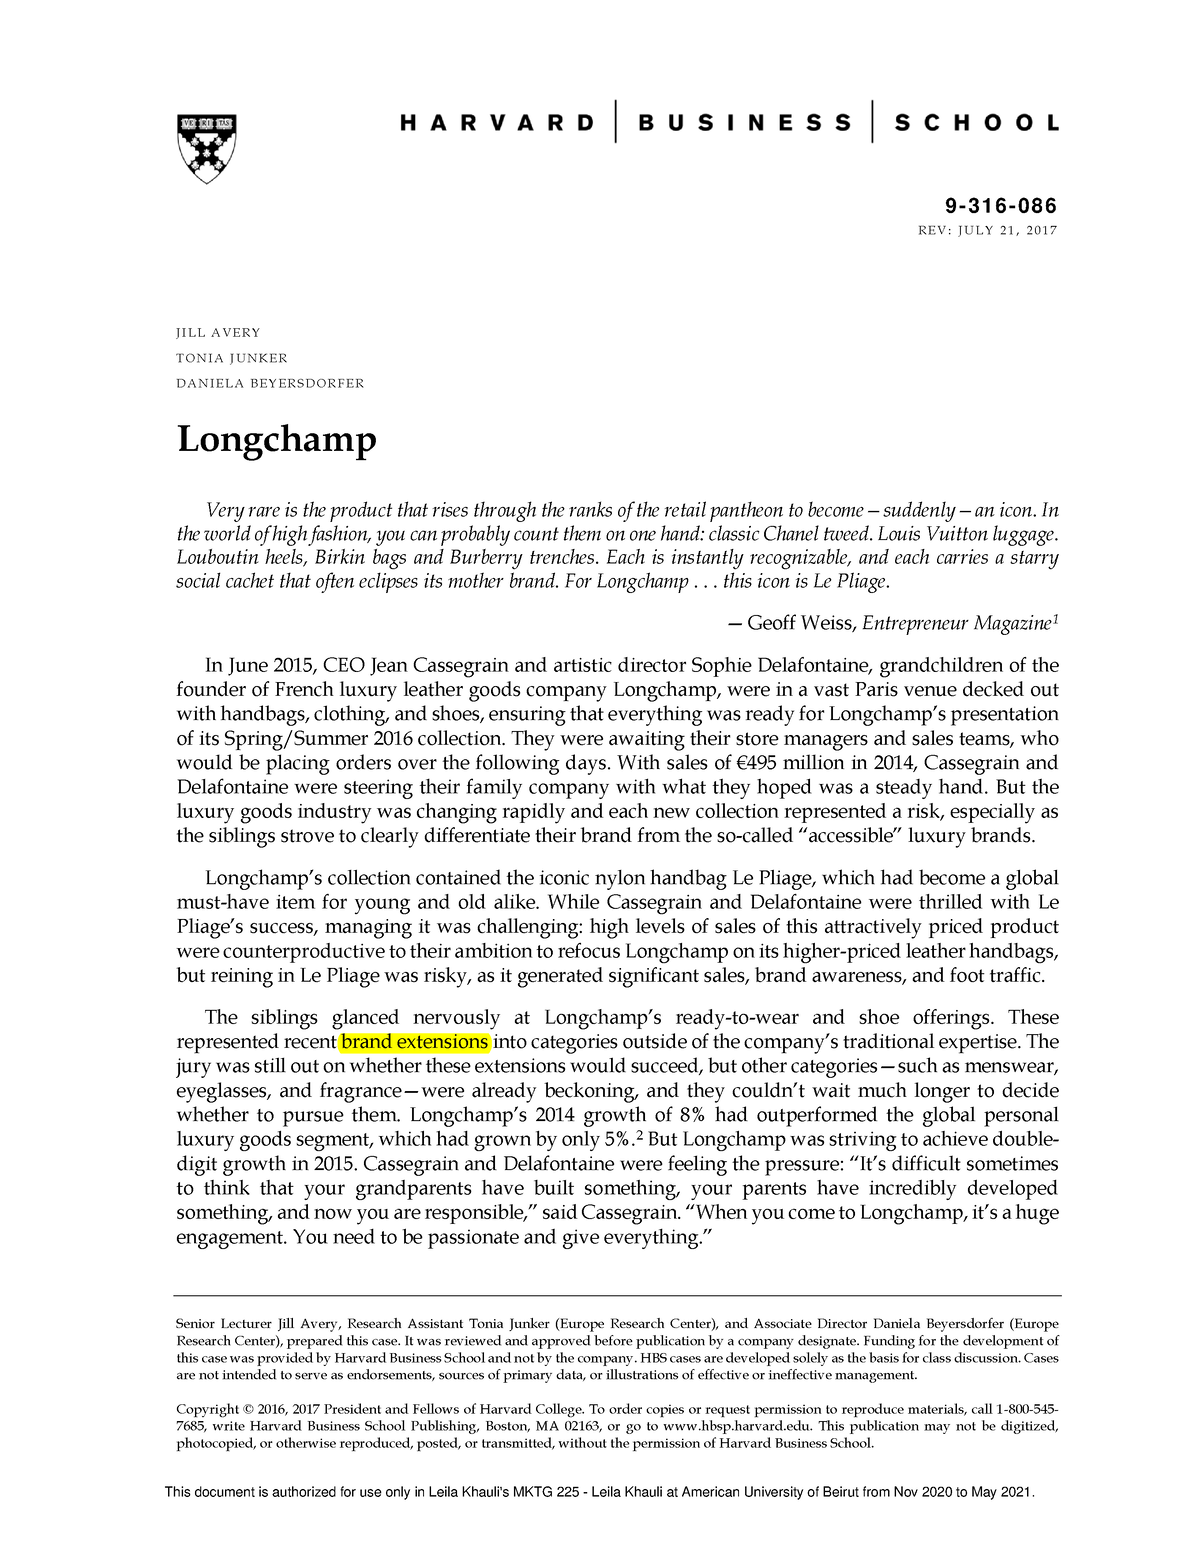 longchamp case study summary